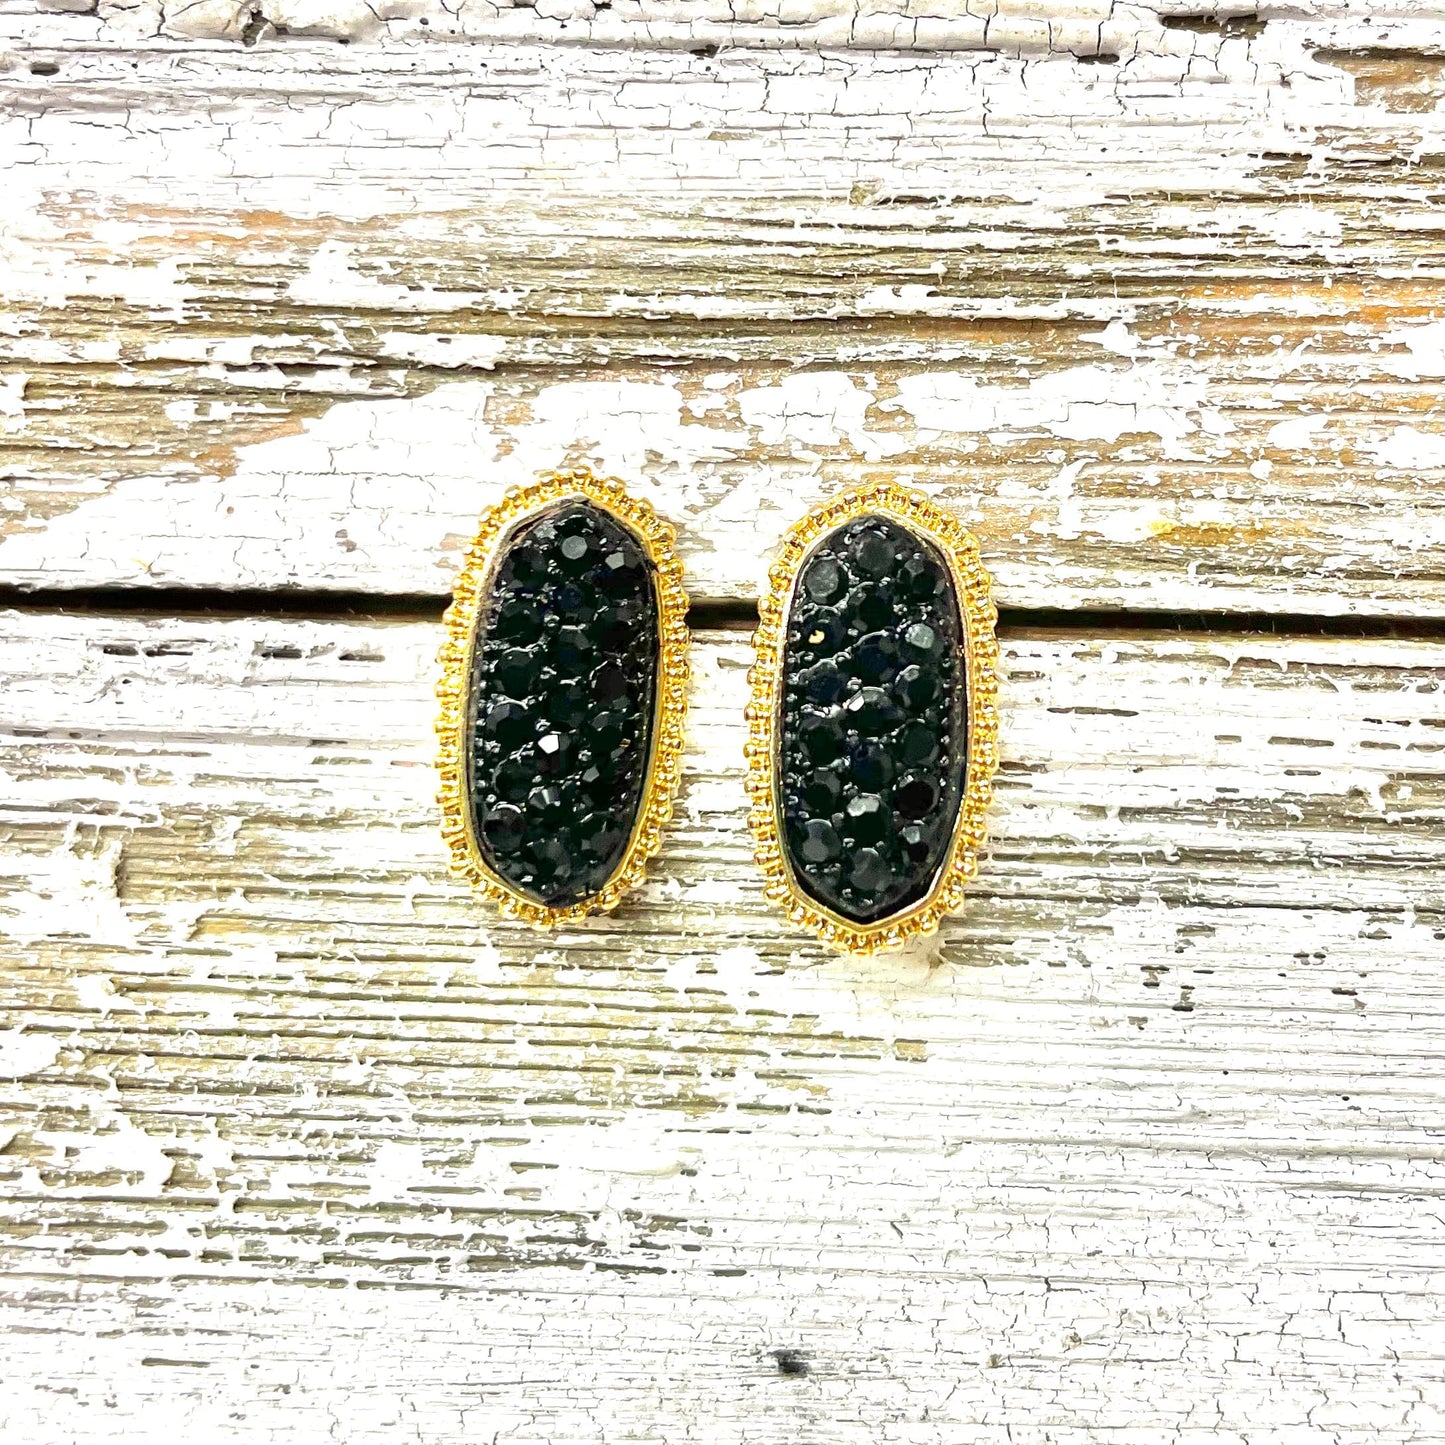 Envy Stylz Boutique Women - Accessories - Earrings Small Gold w/ Black Rhinestone Stud Earrings